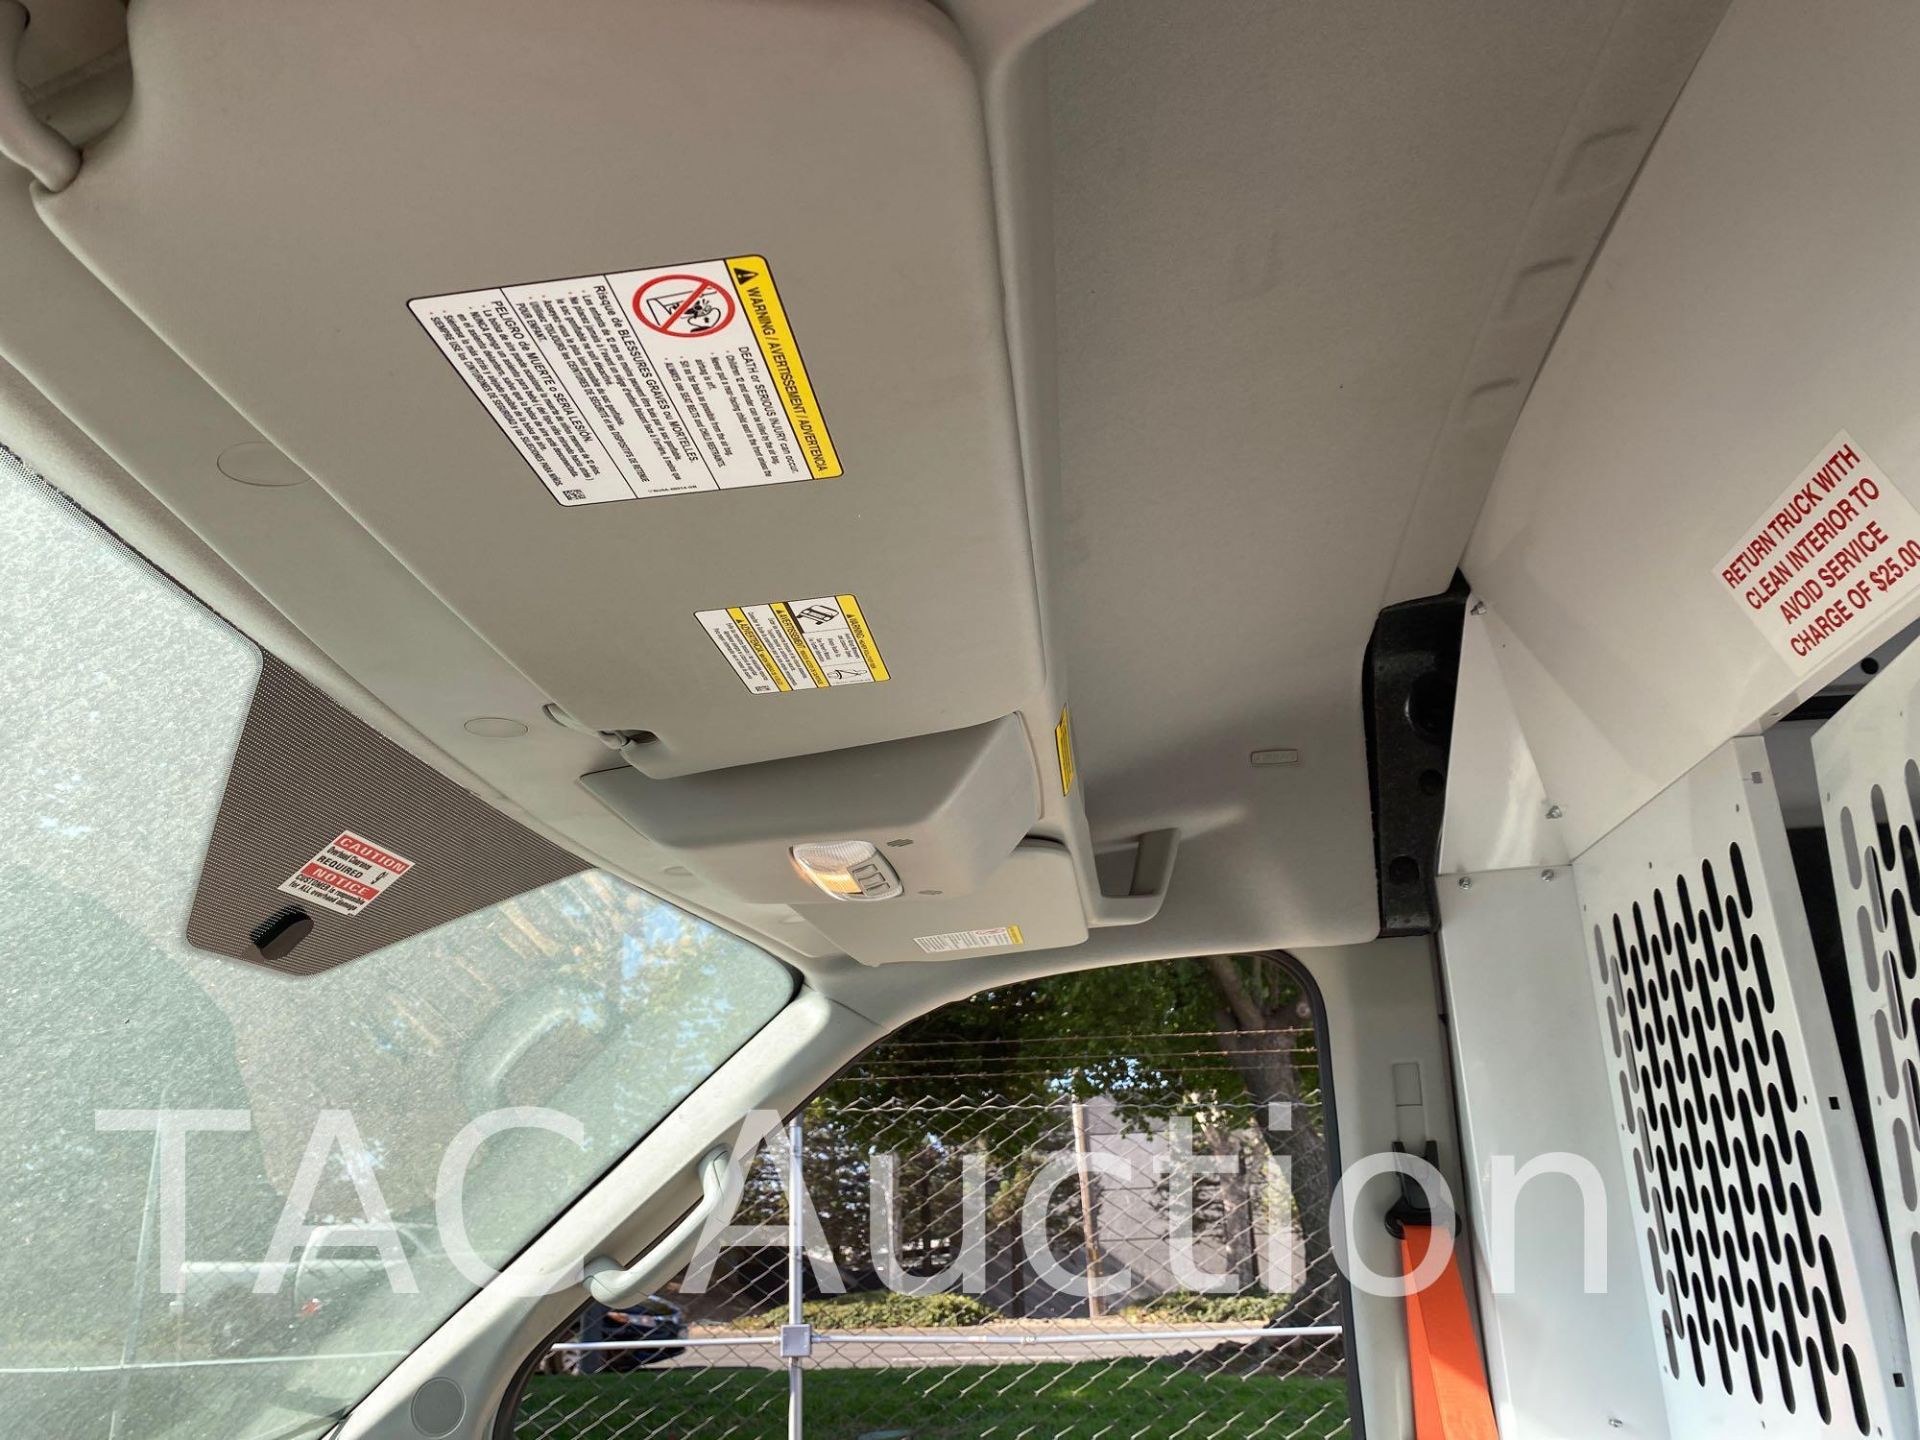 2019 Ford 150 Transit Cargo Van - Image 23 of 43